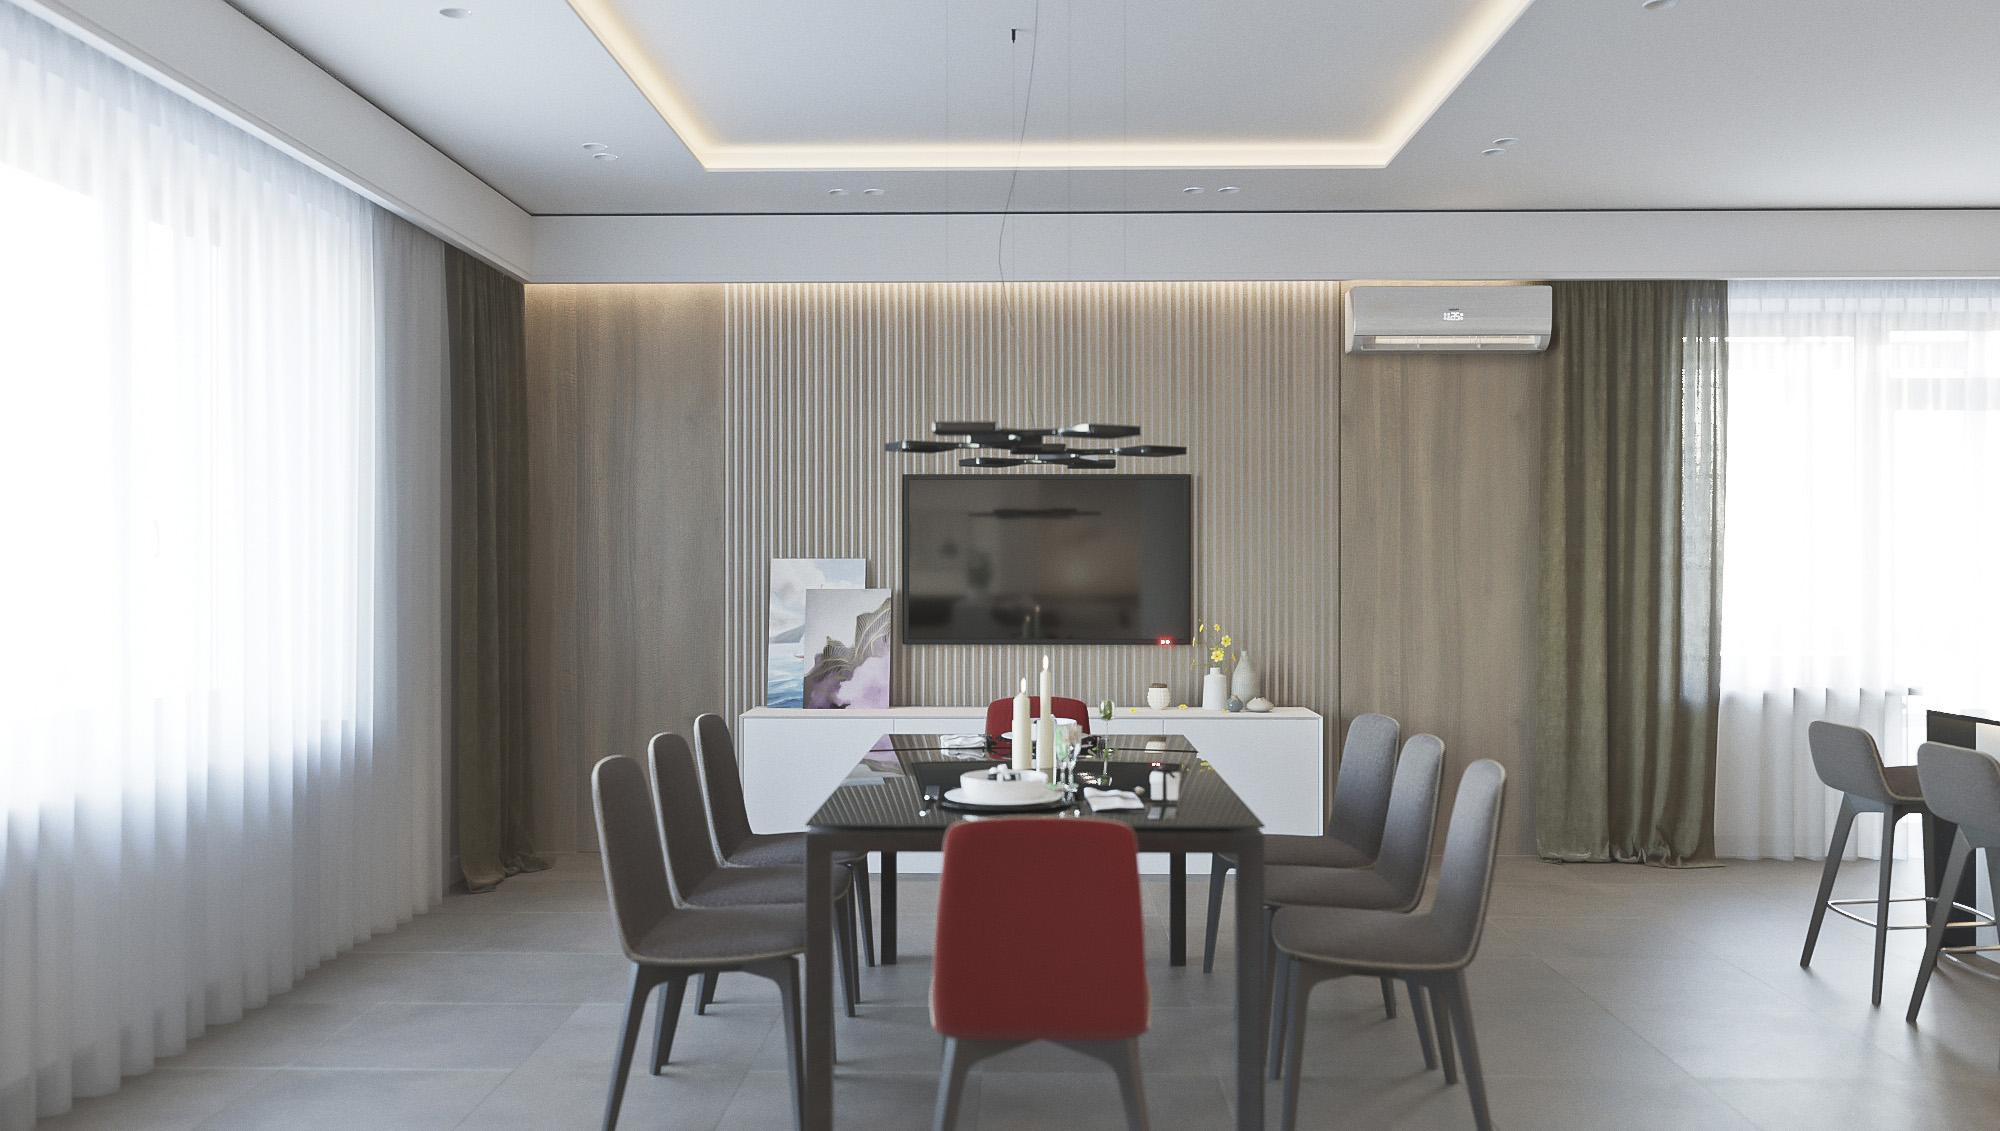 Дизайн объекта - Квартира 200 м2, г. Мариуполь (гостинная, кухня-столовая,холл) , портфолио от студии АртСтройДом